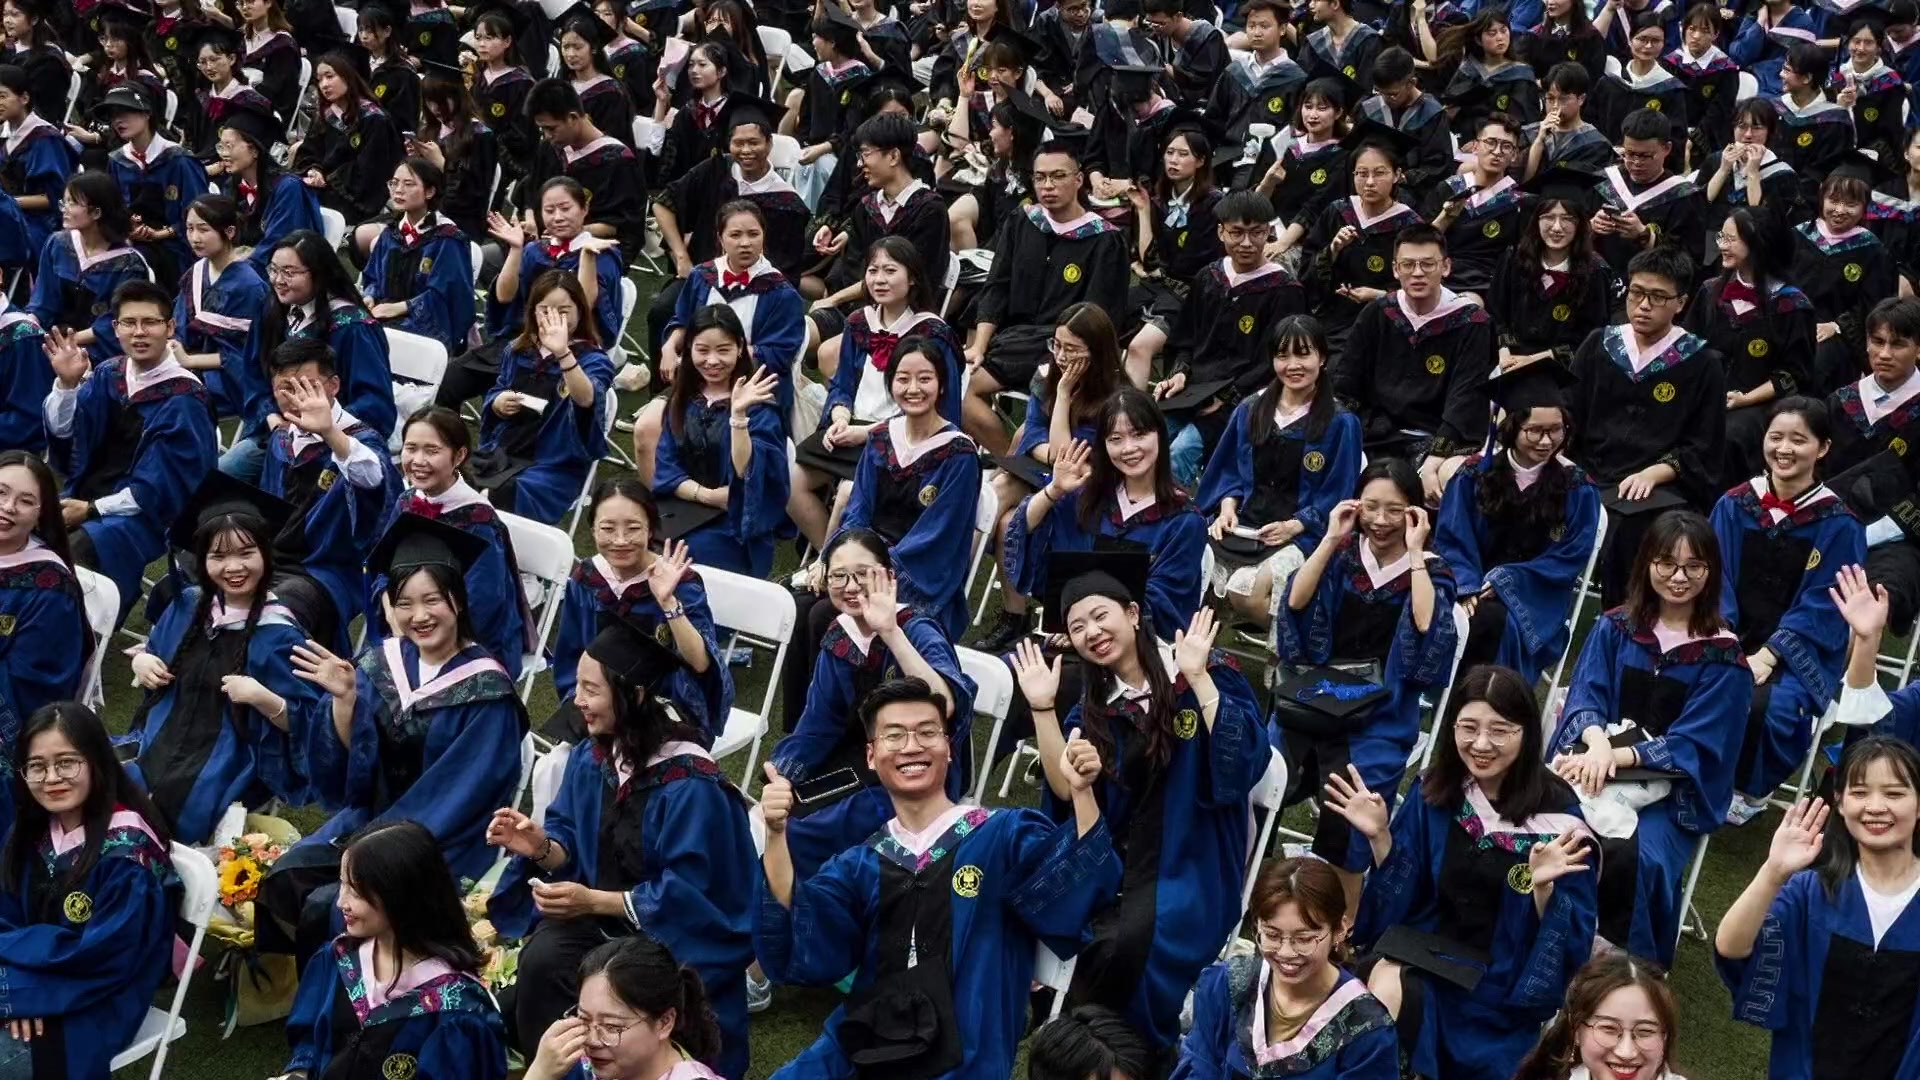 [지구촌 포토] 중국 우한 대학교 졸업식에 9천 명 모여